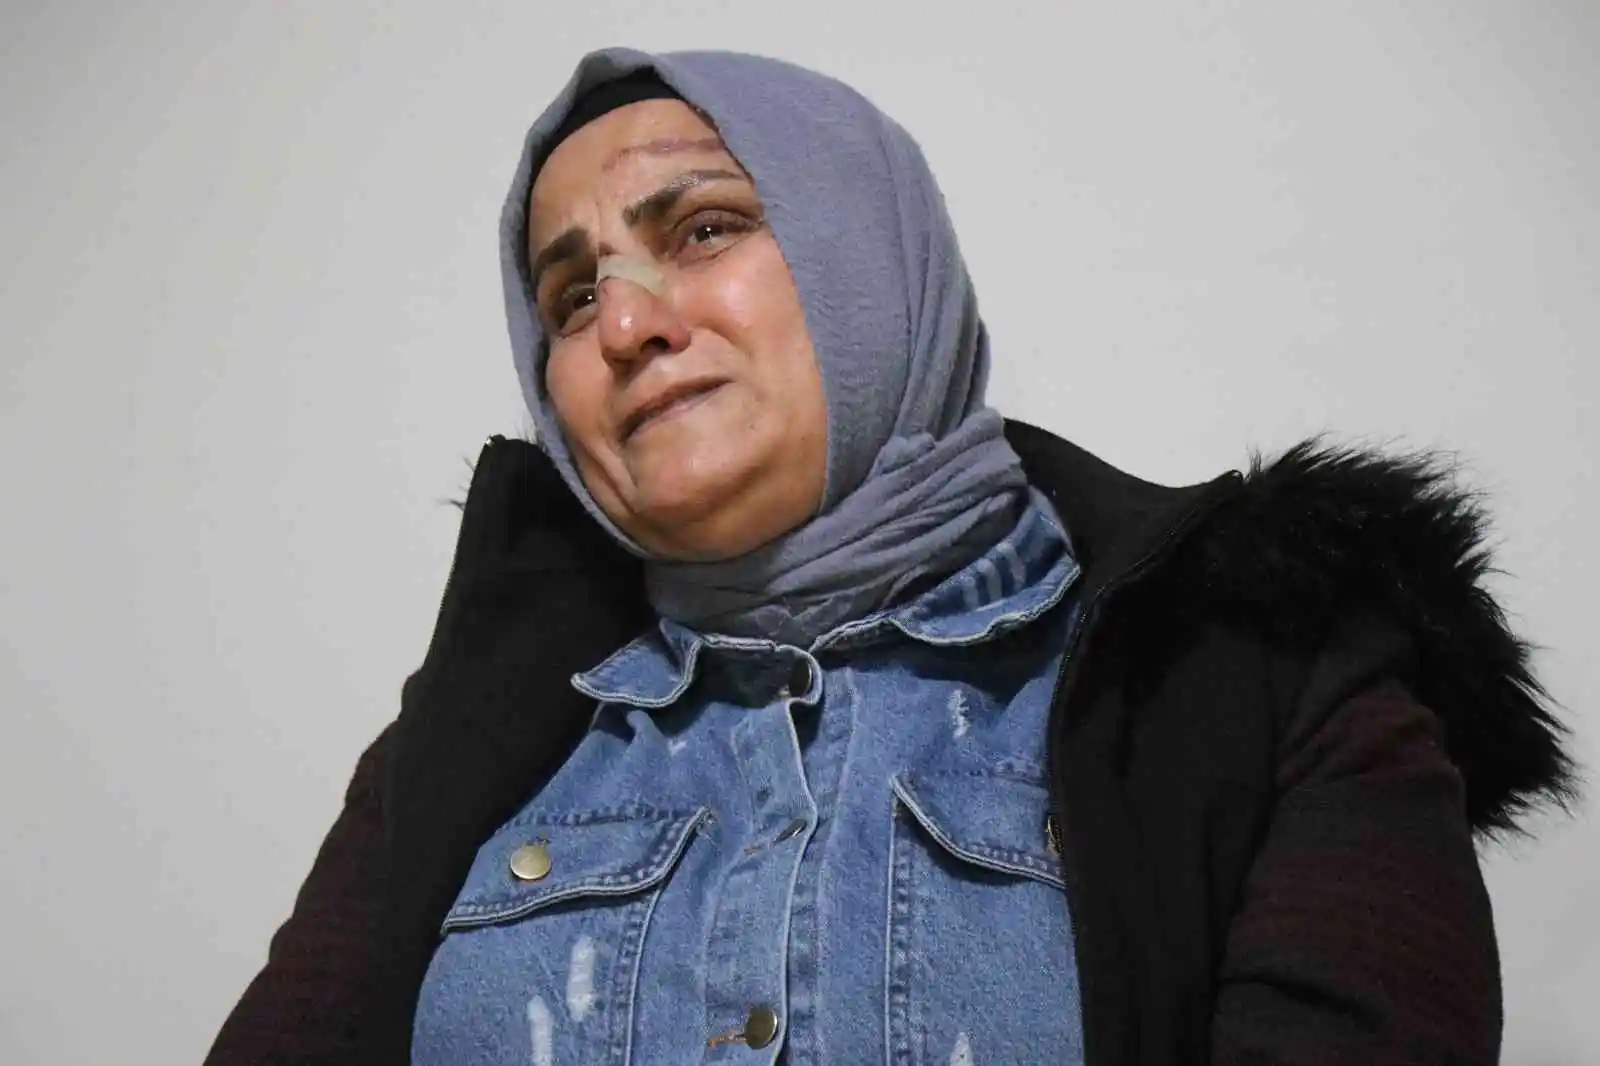 Sakarya'daki cinsel taciz dehşetini acılı anne gözyaşlarıyla anlattı
